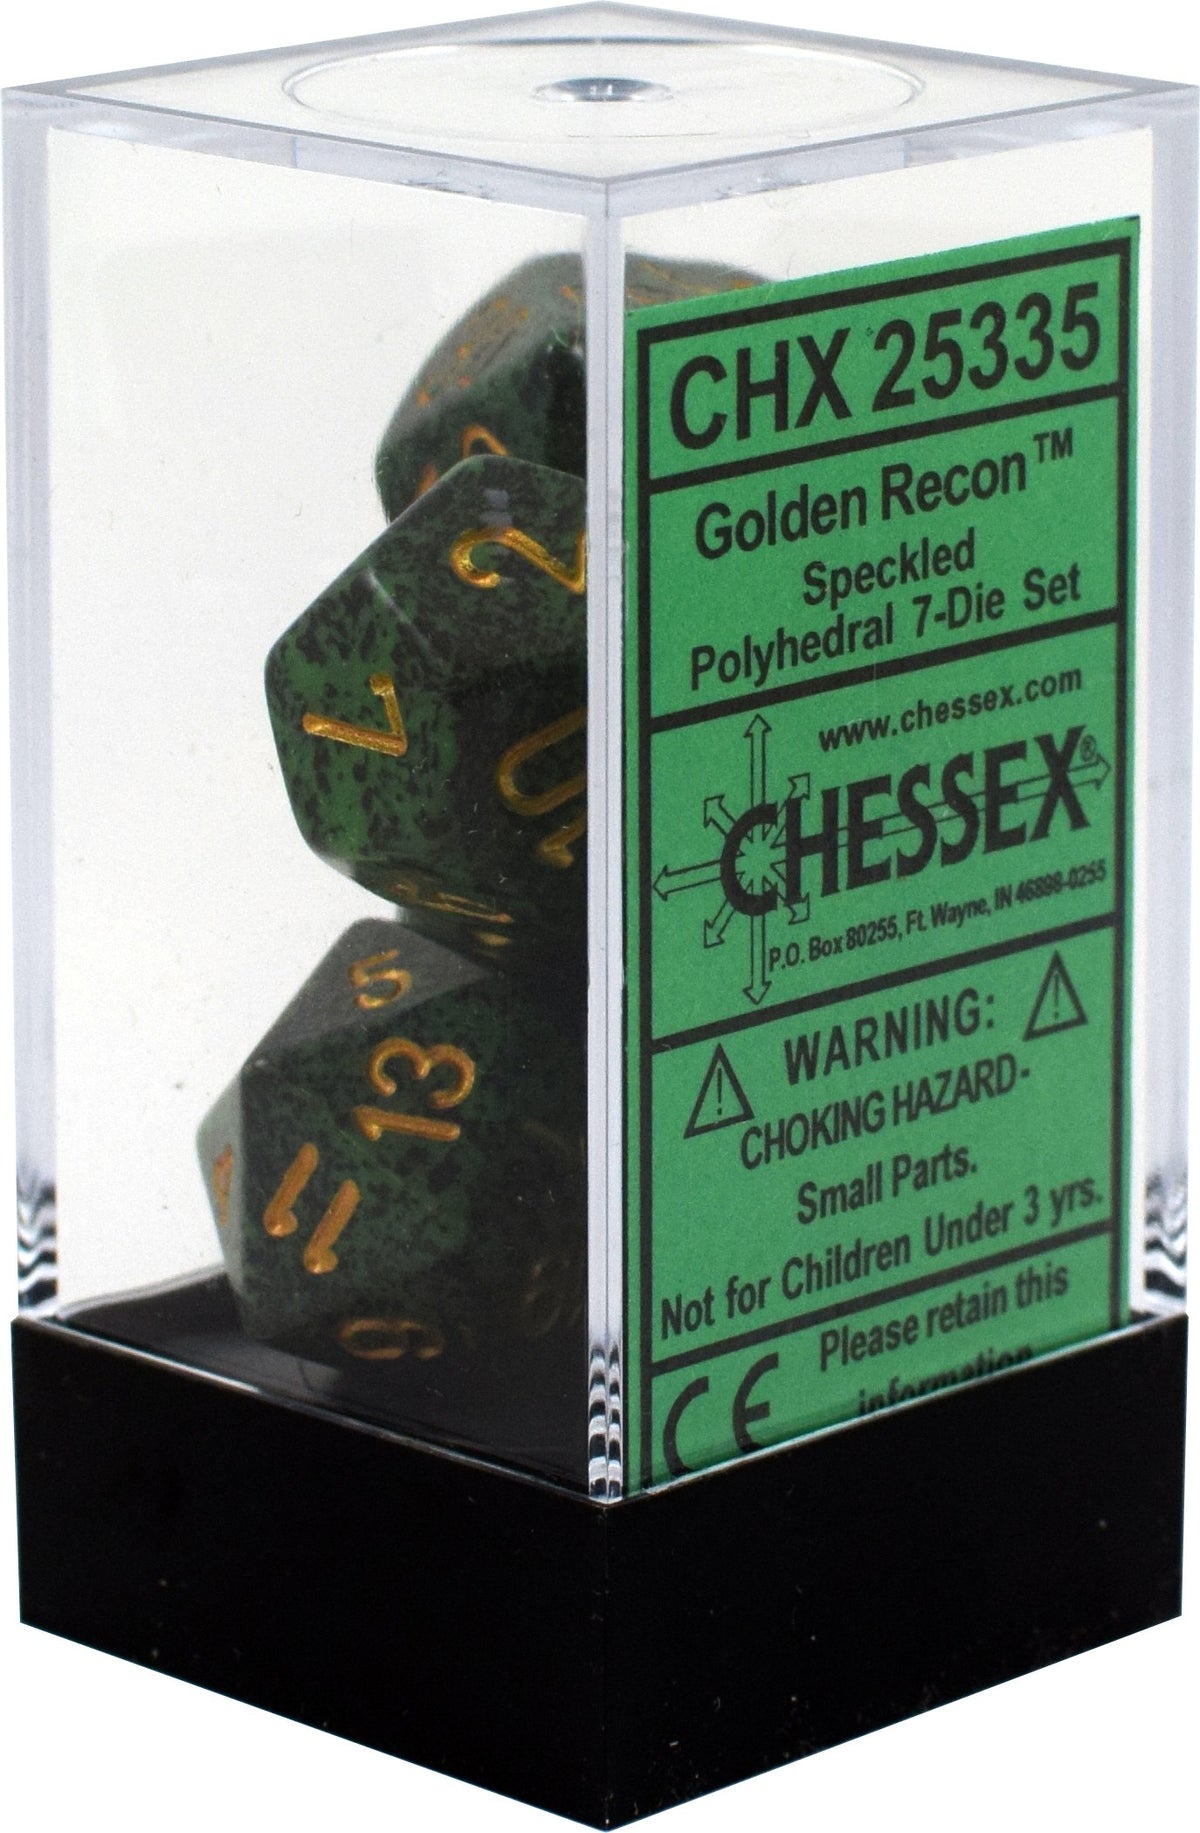 Chessex - Speckled Polyhedral 7-Die Set - Golden Recon (CHX25335)